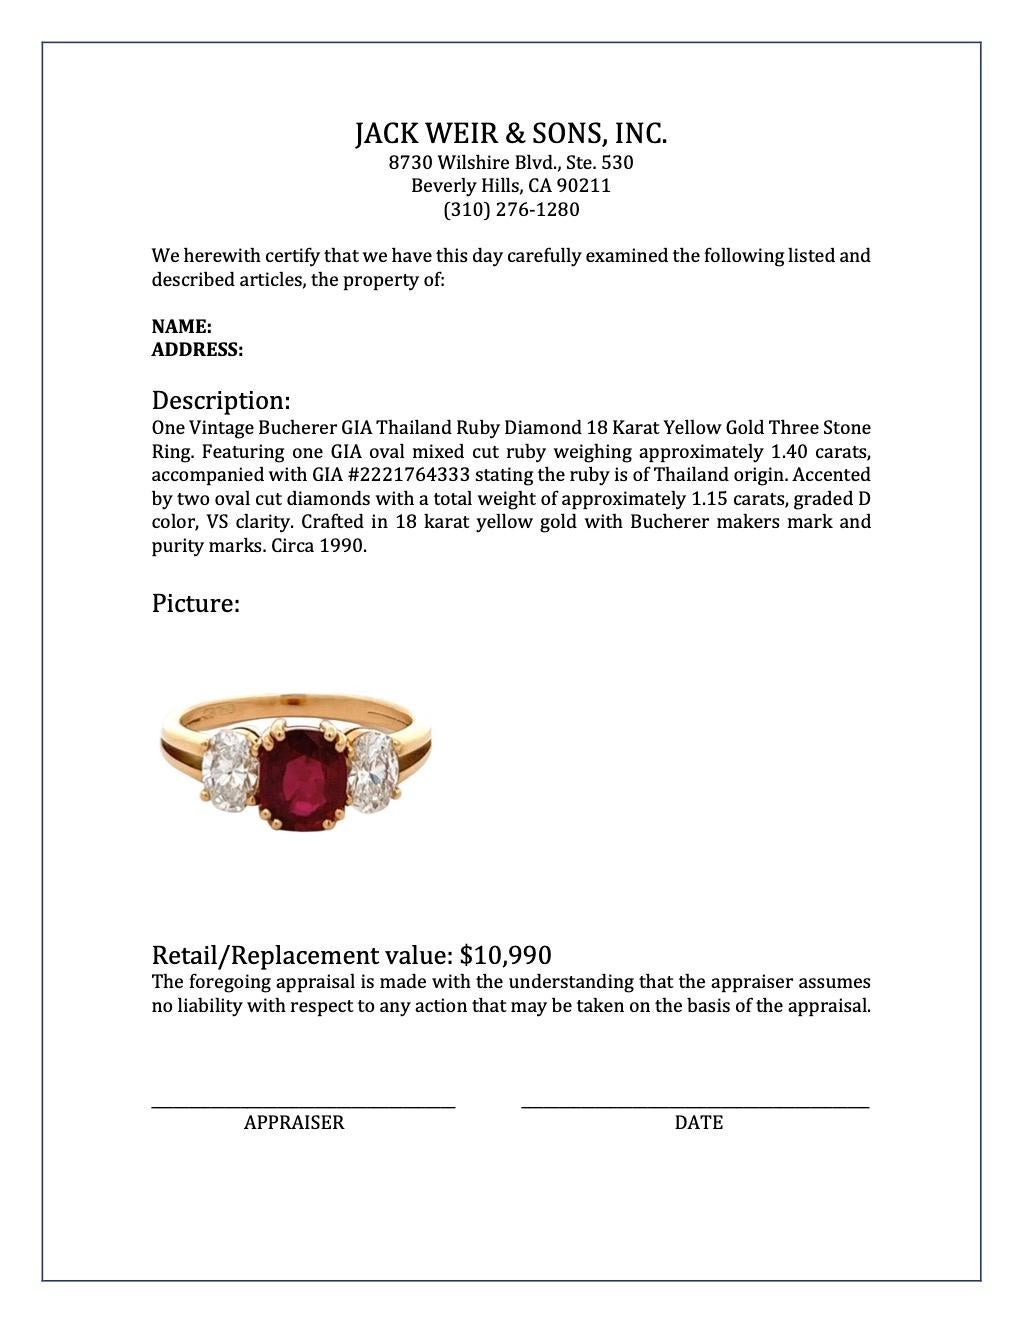 Vintage Bucherer GIA Thailand Ruby Diamond 18 Karat Yellow Gold Three Stone Ring 3